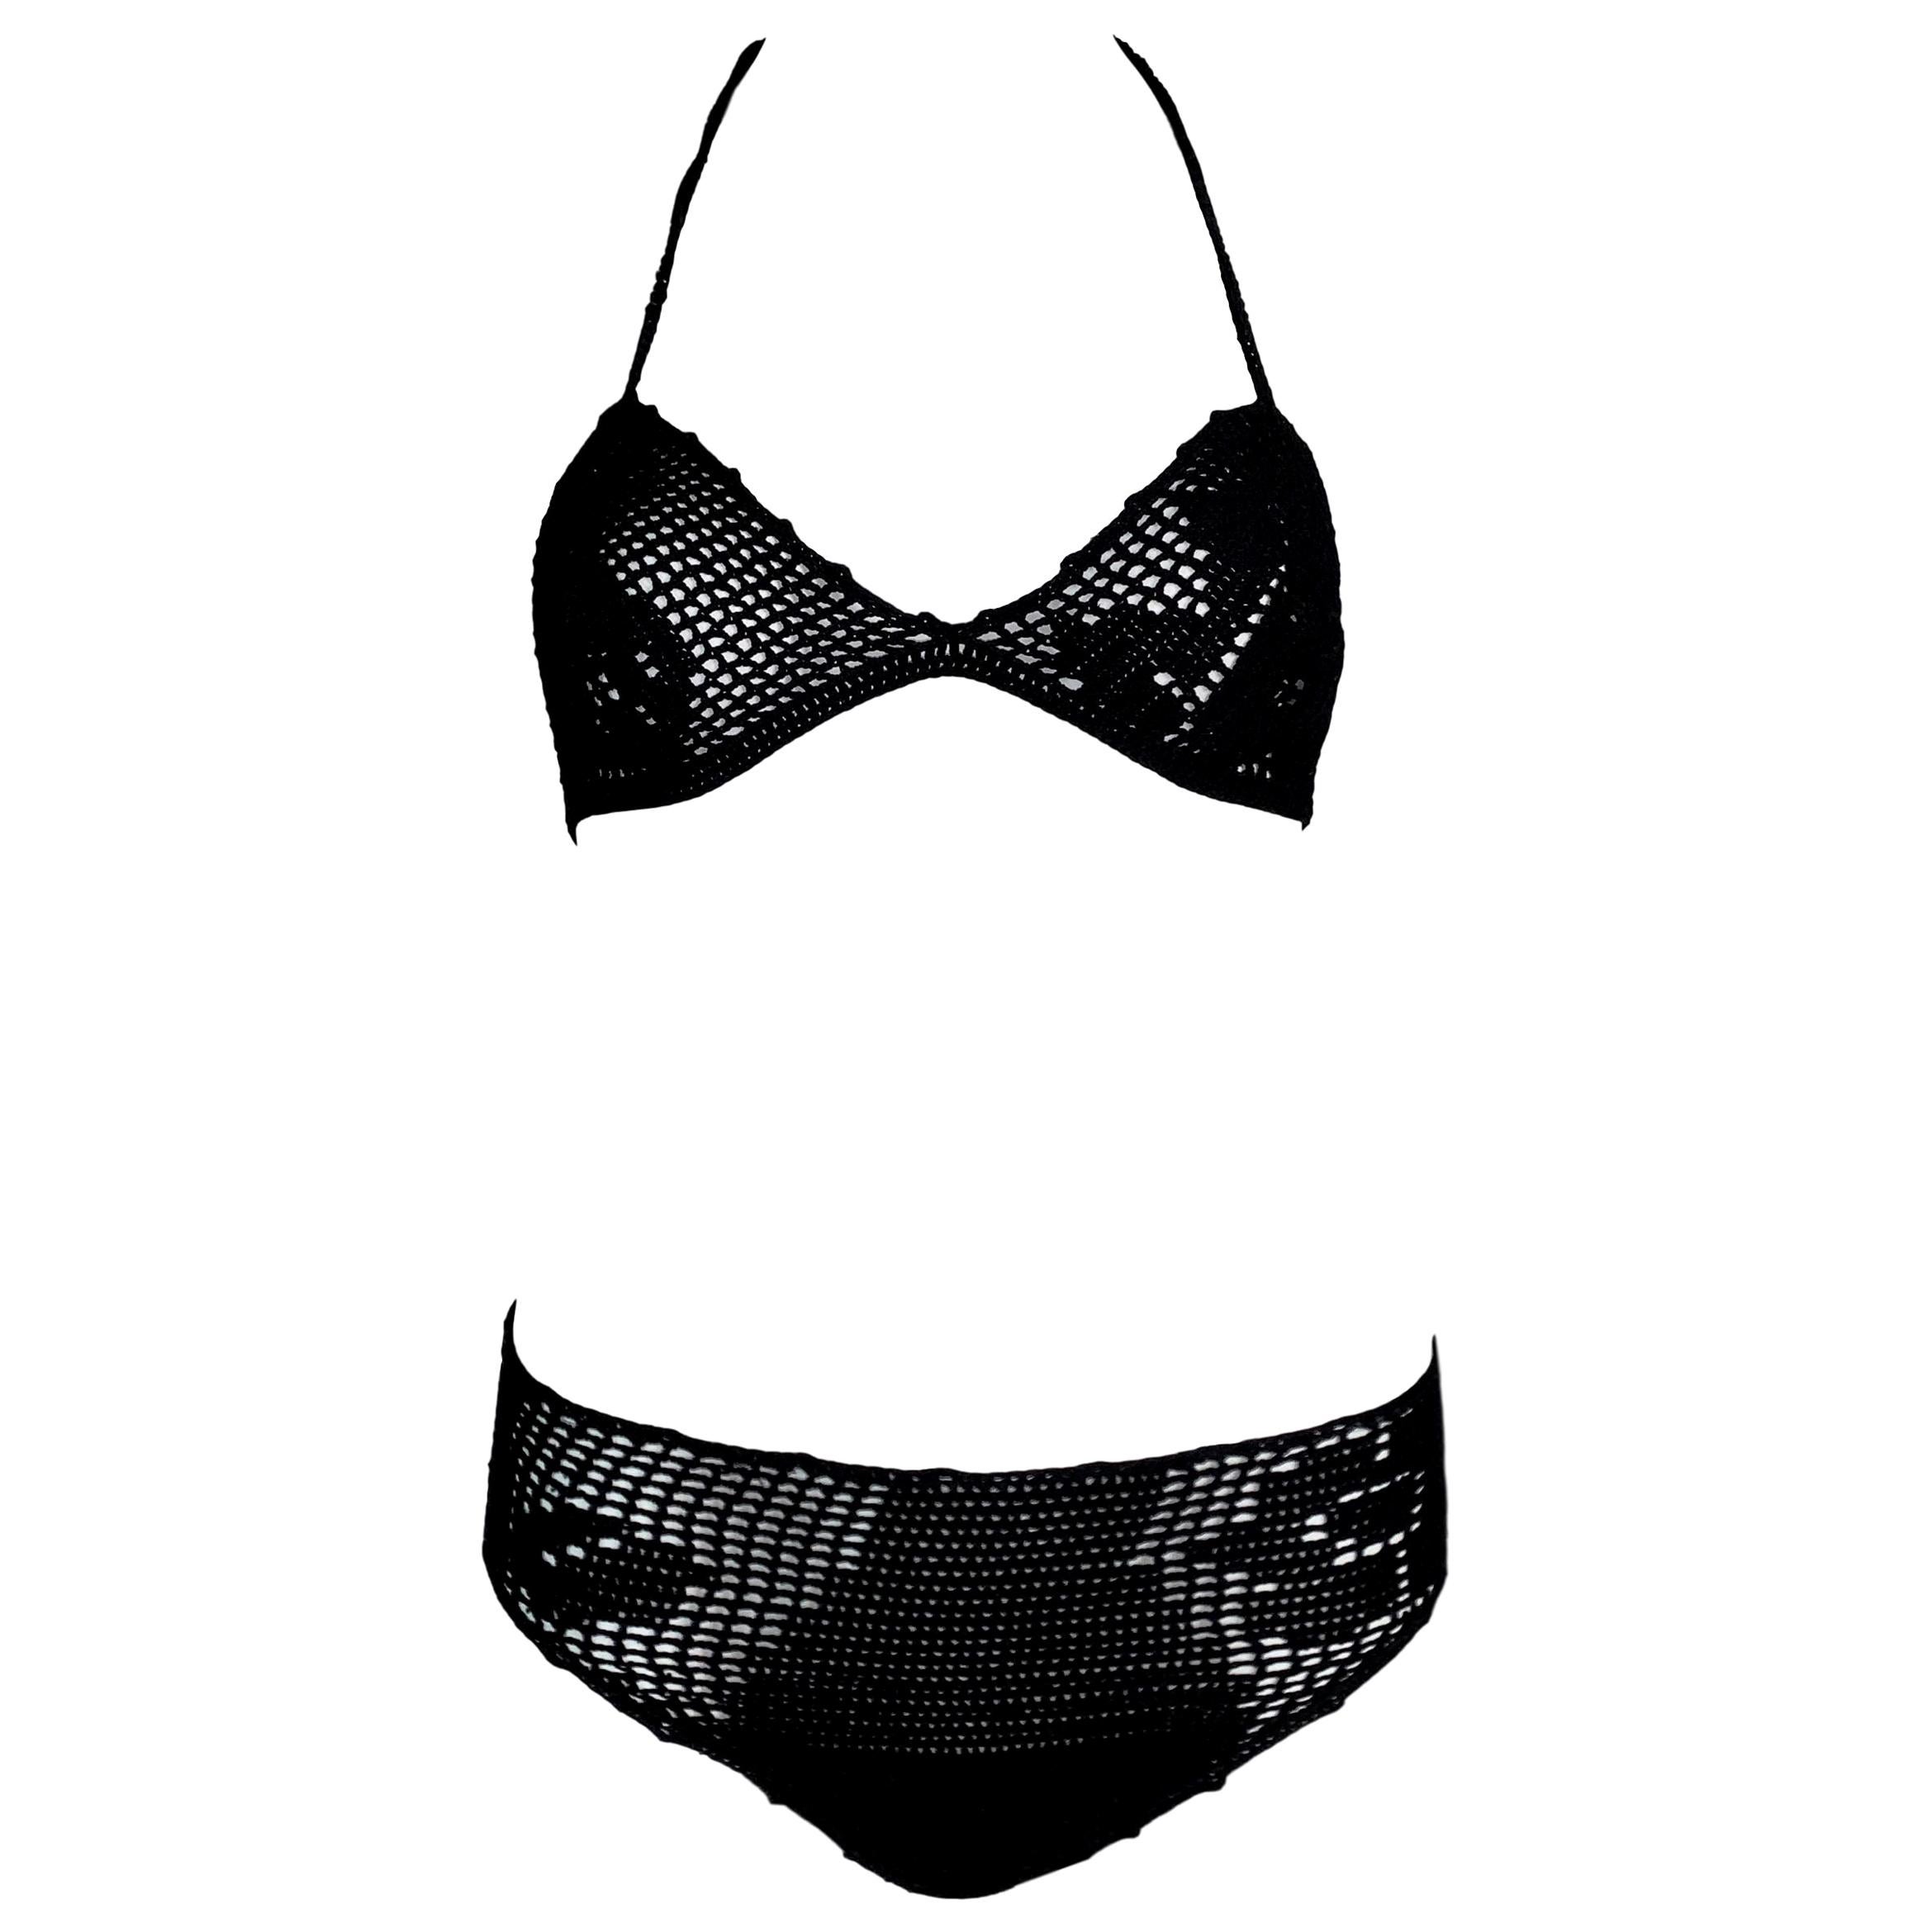 S/S 1997 Dolce & Gabbana Sheer Black Crochet Bikini Swimwear